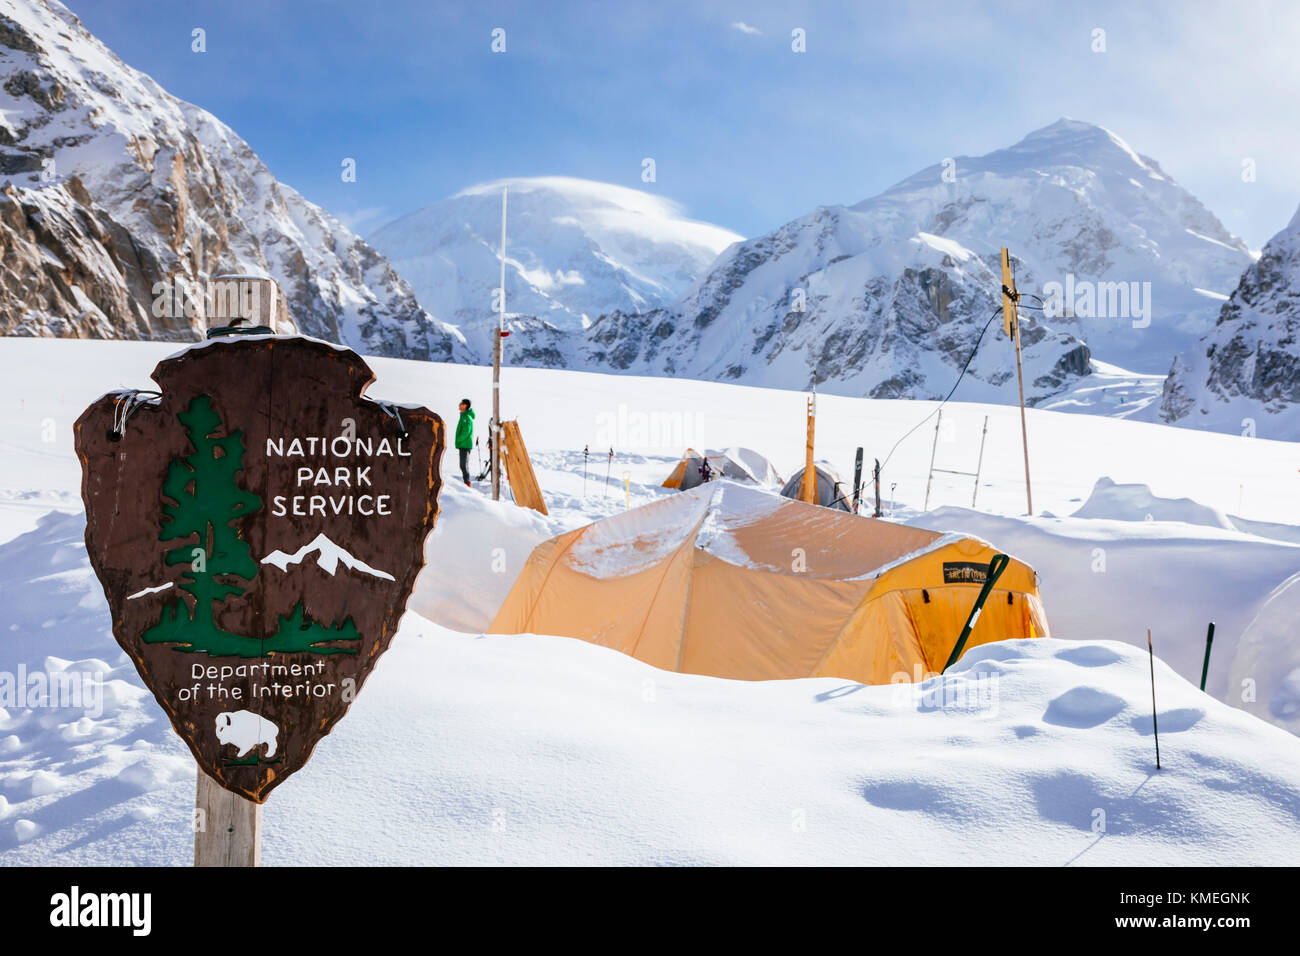 Sign and tents at National Park Service ranger base camp on Denali,Denali National Park,Alaska,USA Stock Photo